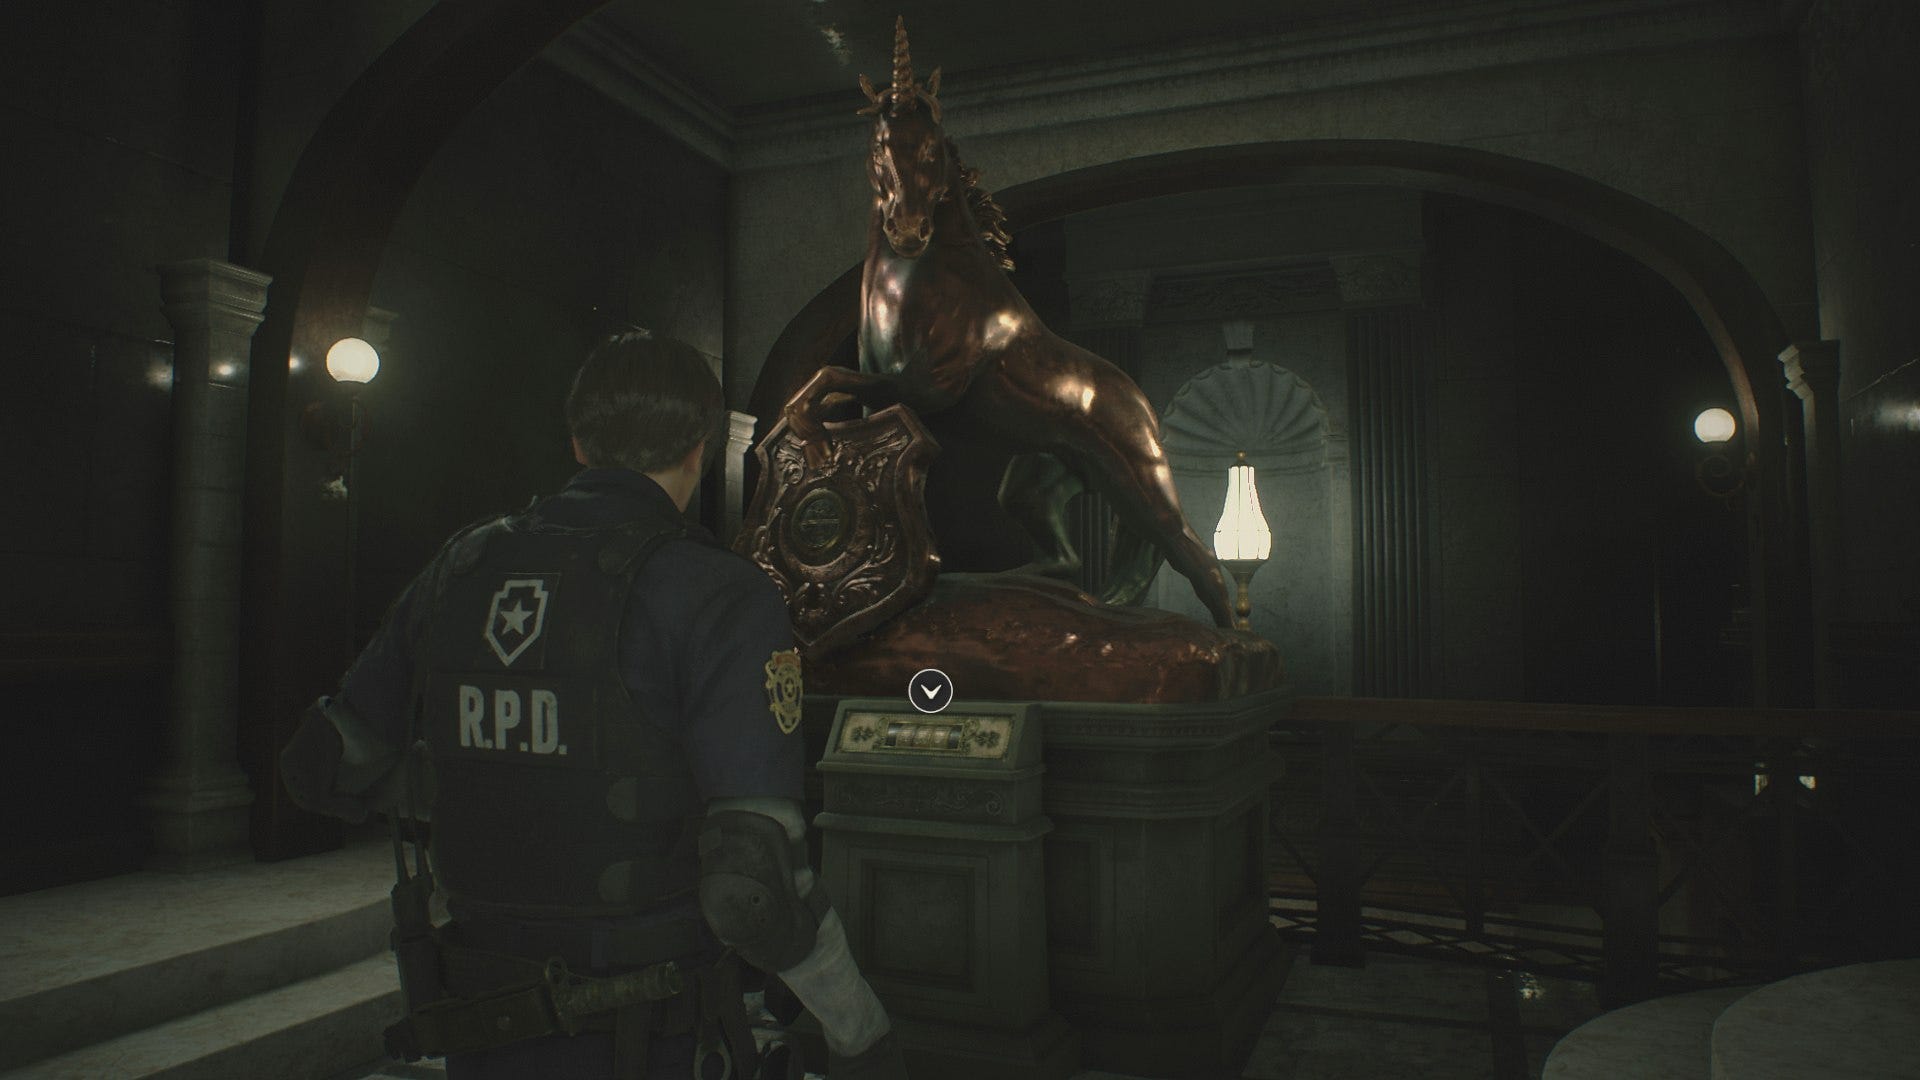 Resident evil 2 где медальоны. Статуя Льва Resident Evil 2 Remake. Статуя Льва Resident Evil 2 Remake Клер. Резидент ивел 2 ремейк медальоны.